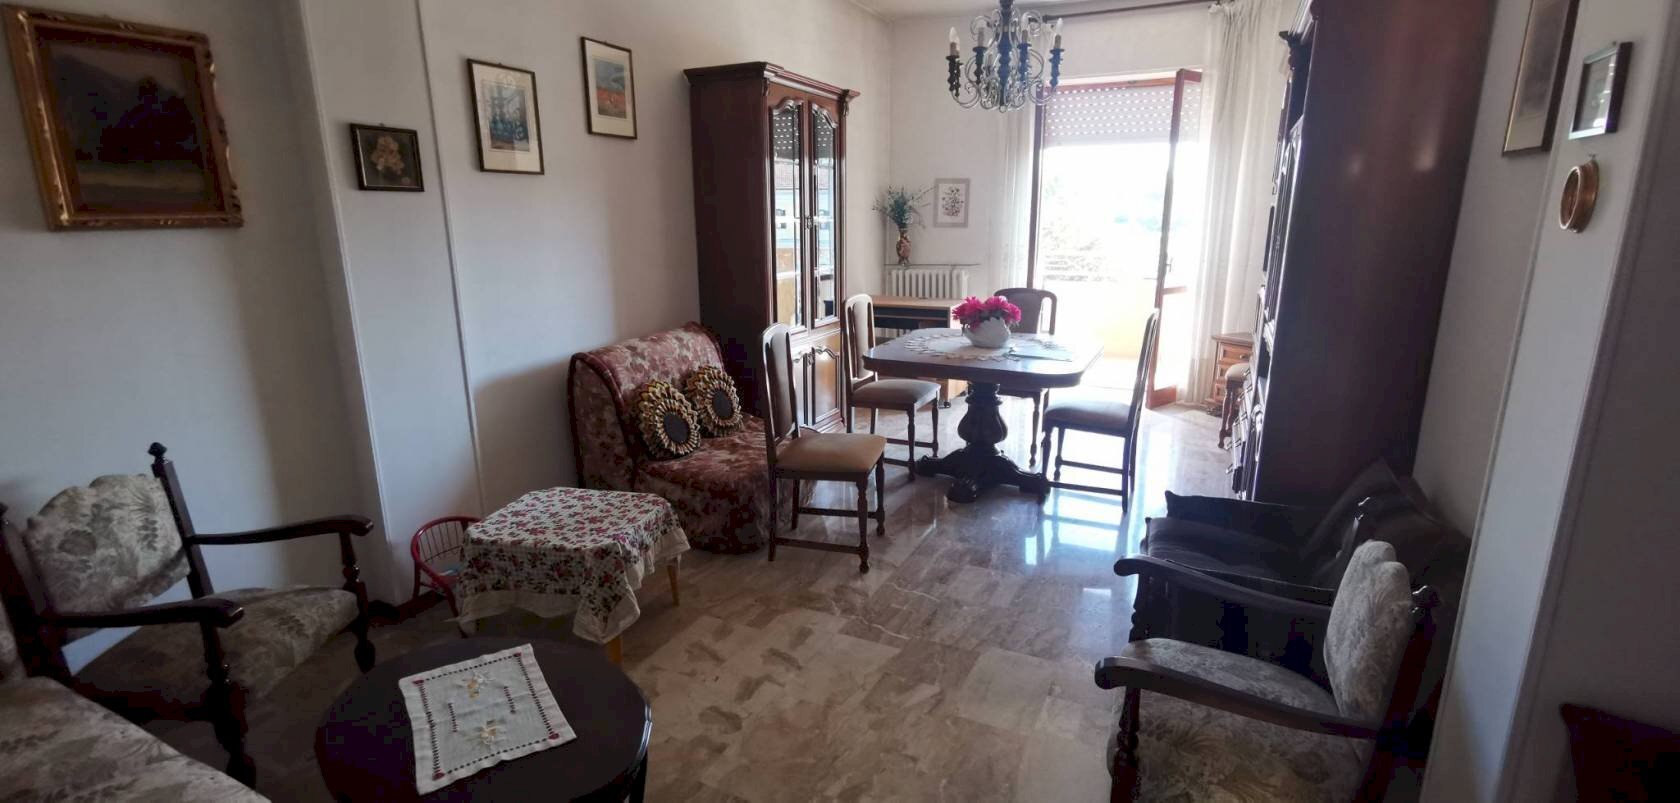 Appartamento in affitto a Montegrosso d'Asti, 1 locali, prezzo € 350 | PortaleAgenzieImmobiliari.it